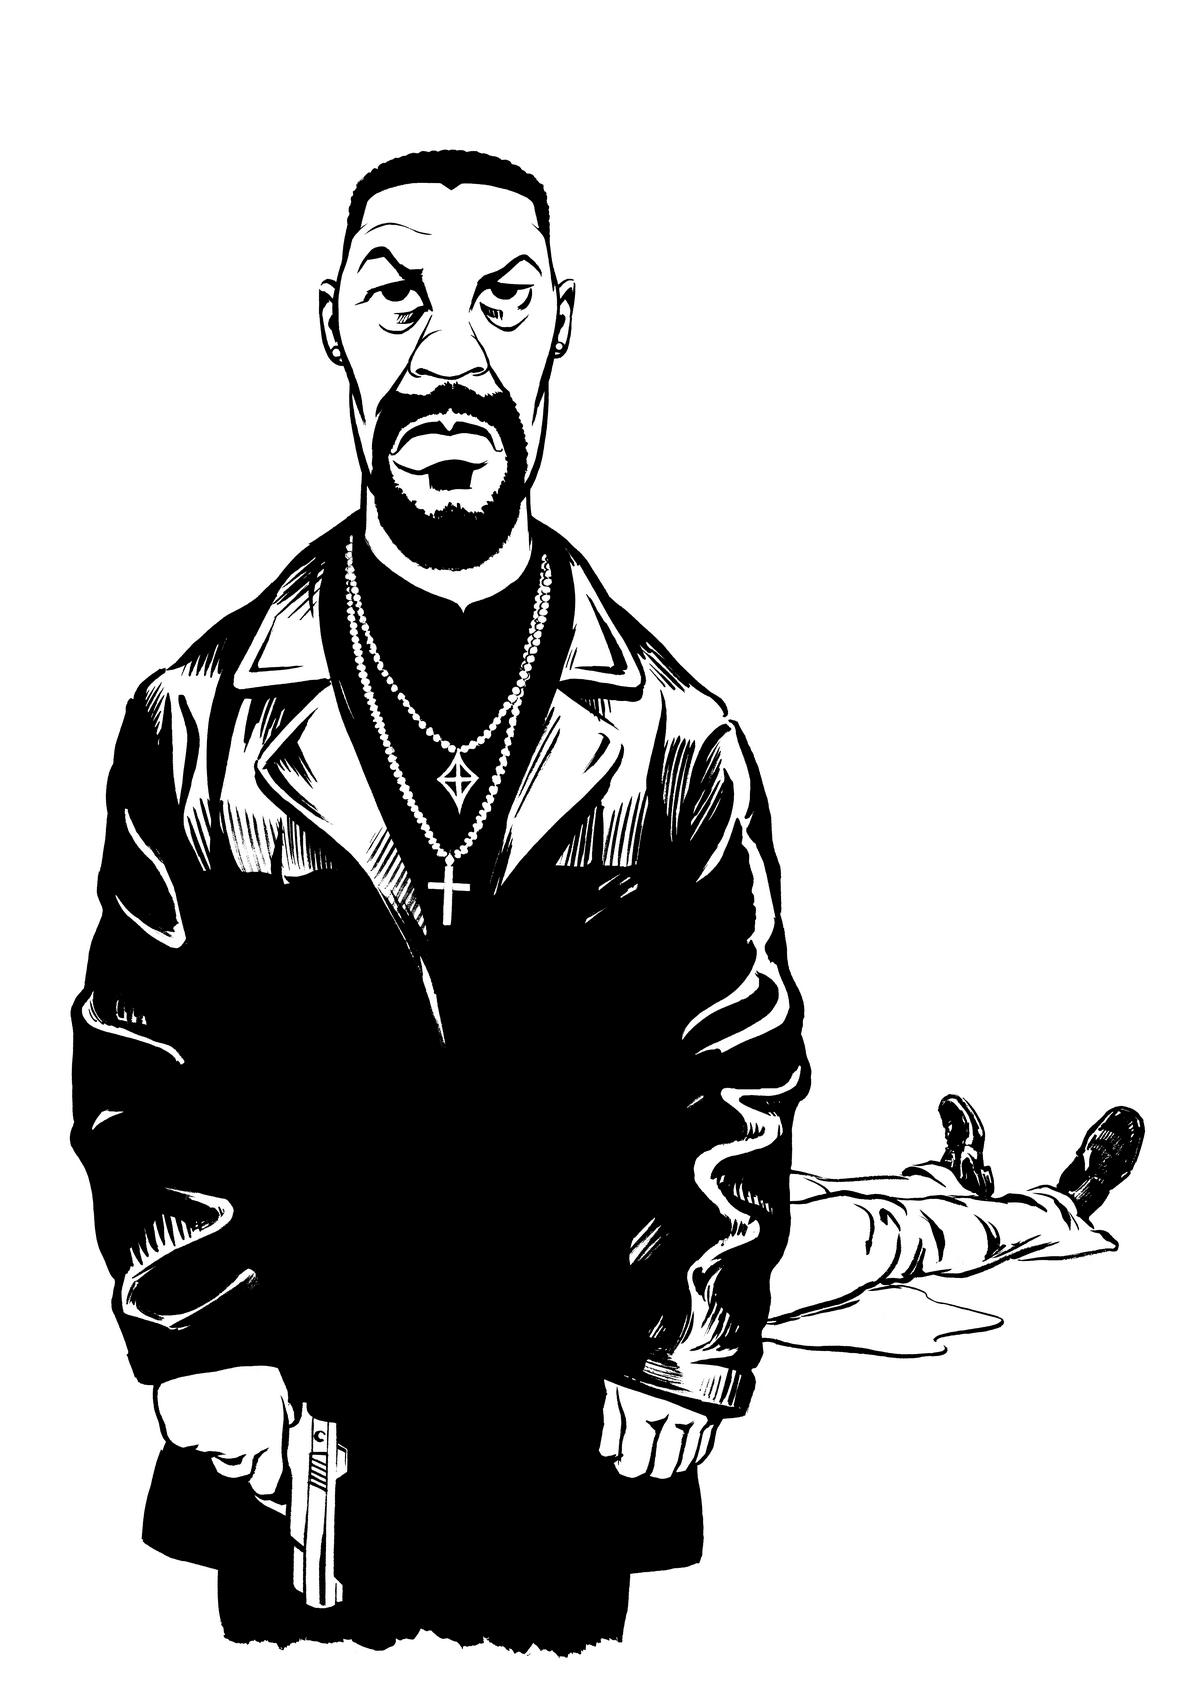 Denzel Washington caricature